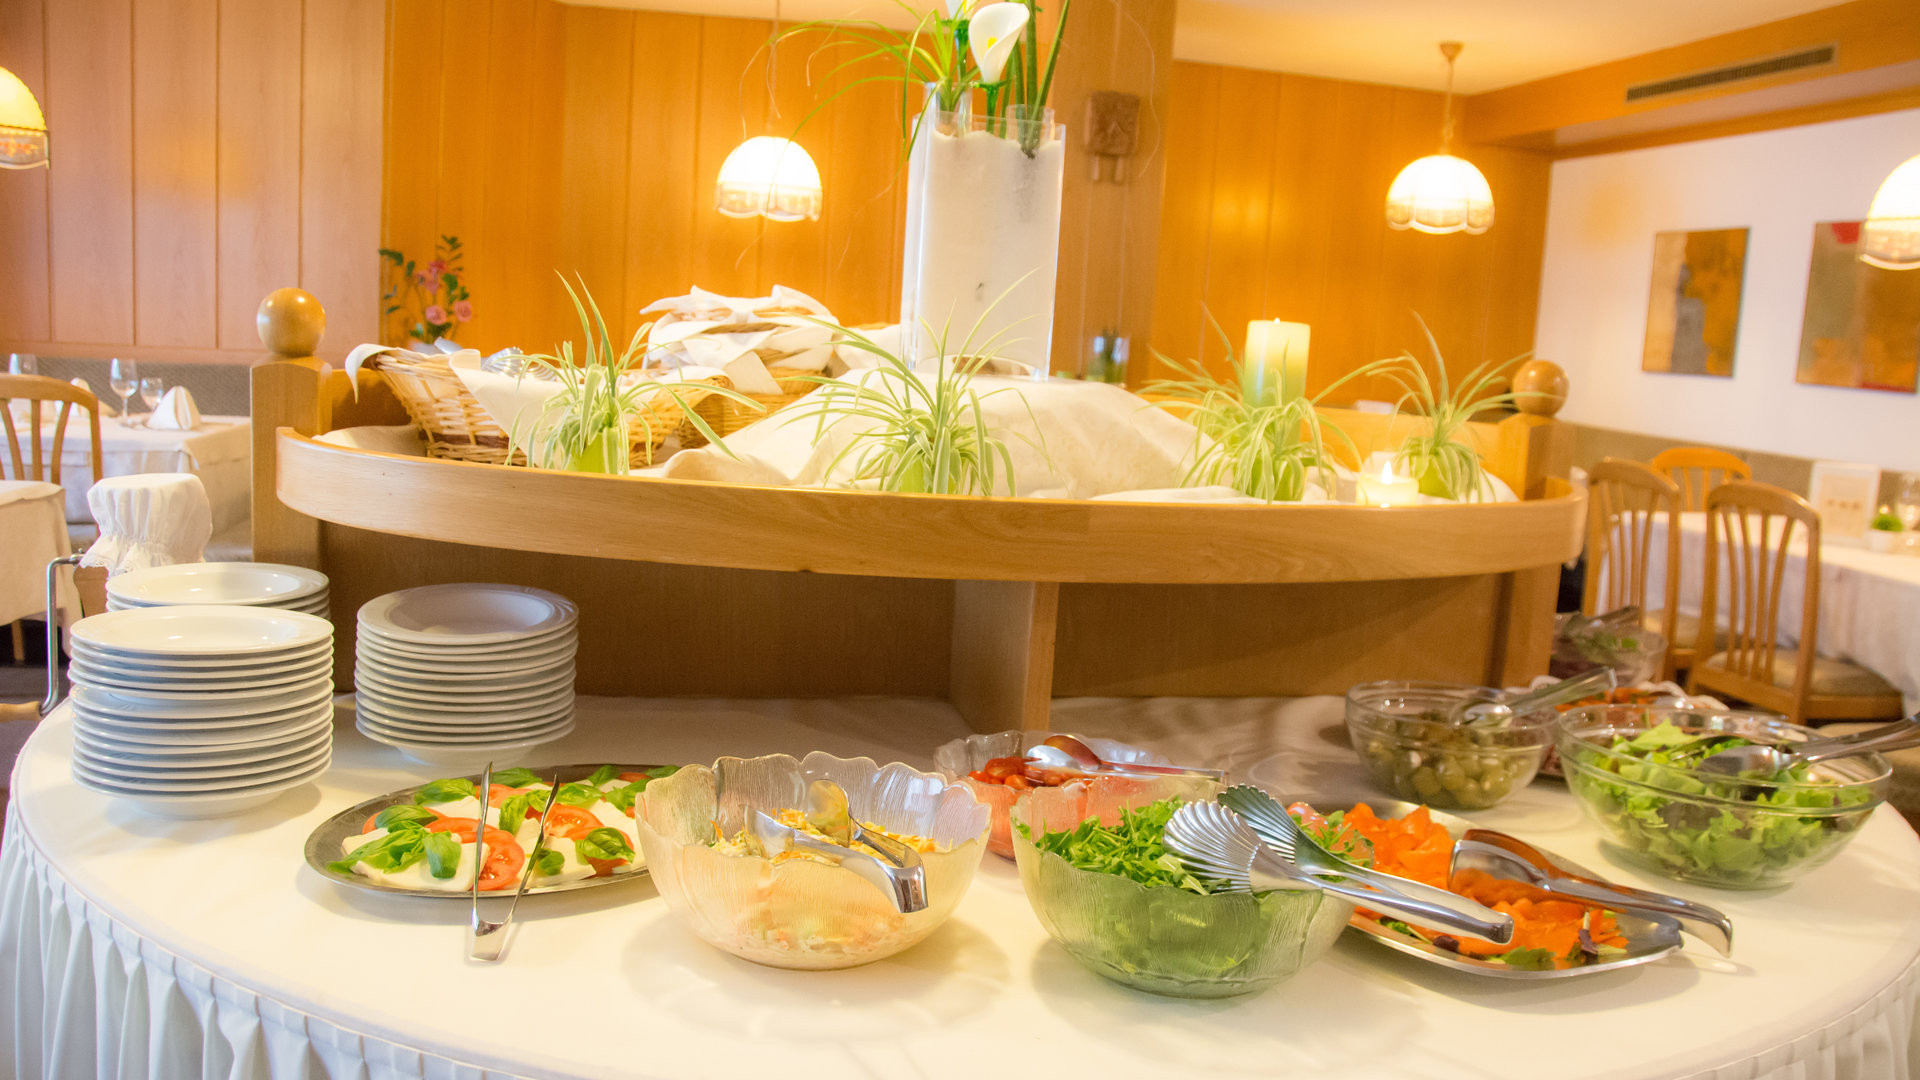 Salat- und Kalte Vorspeisenbüffet im Hotel Schweigl in St. Walburg/ Ultental in Südtirol.